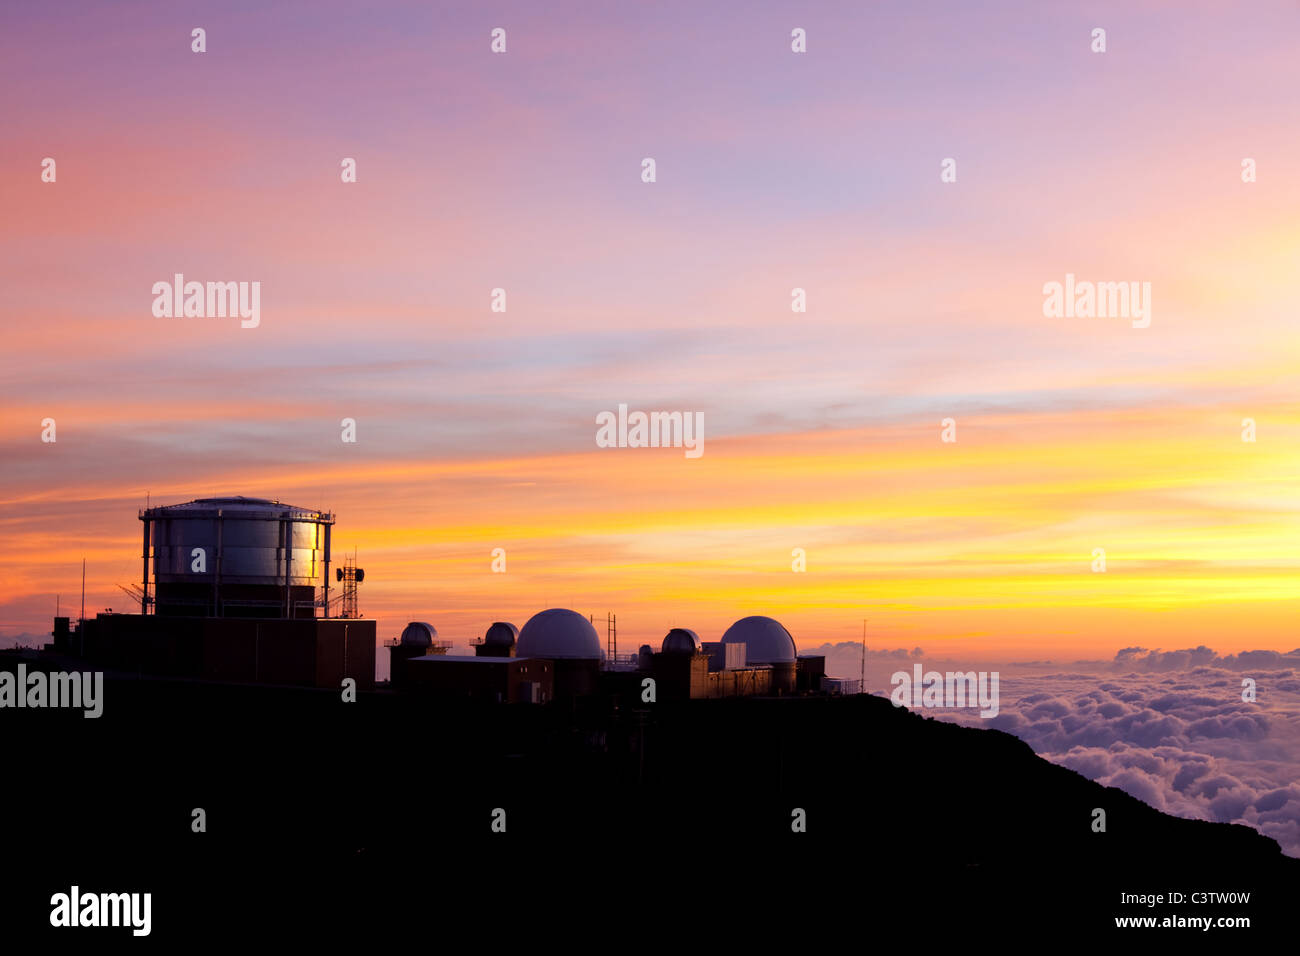 Haleakala Observatories on Hawaii island of Maui Stock Photo